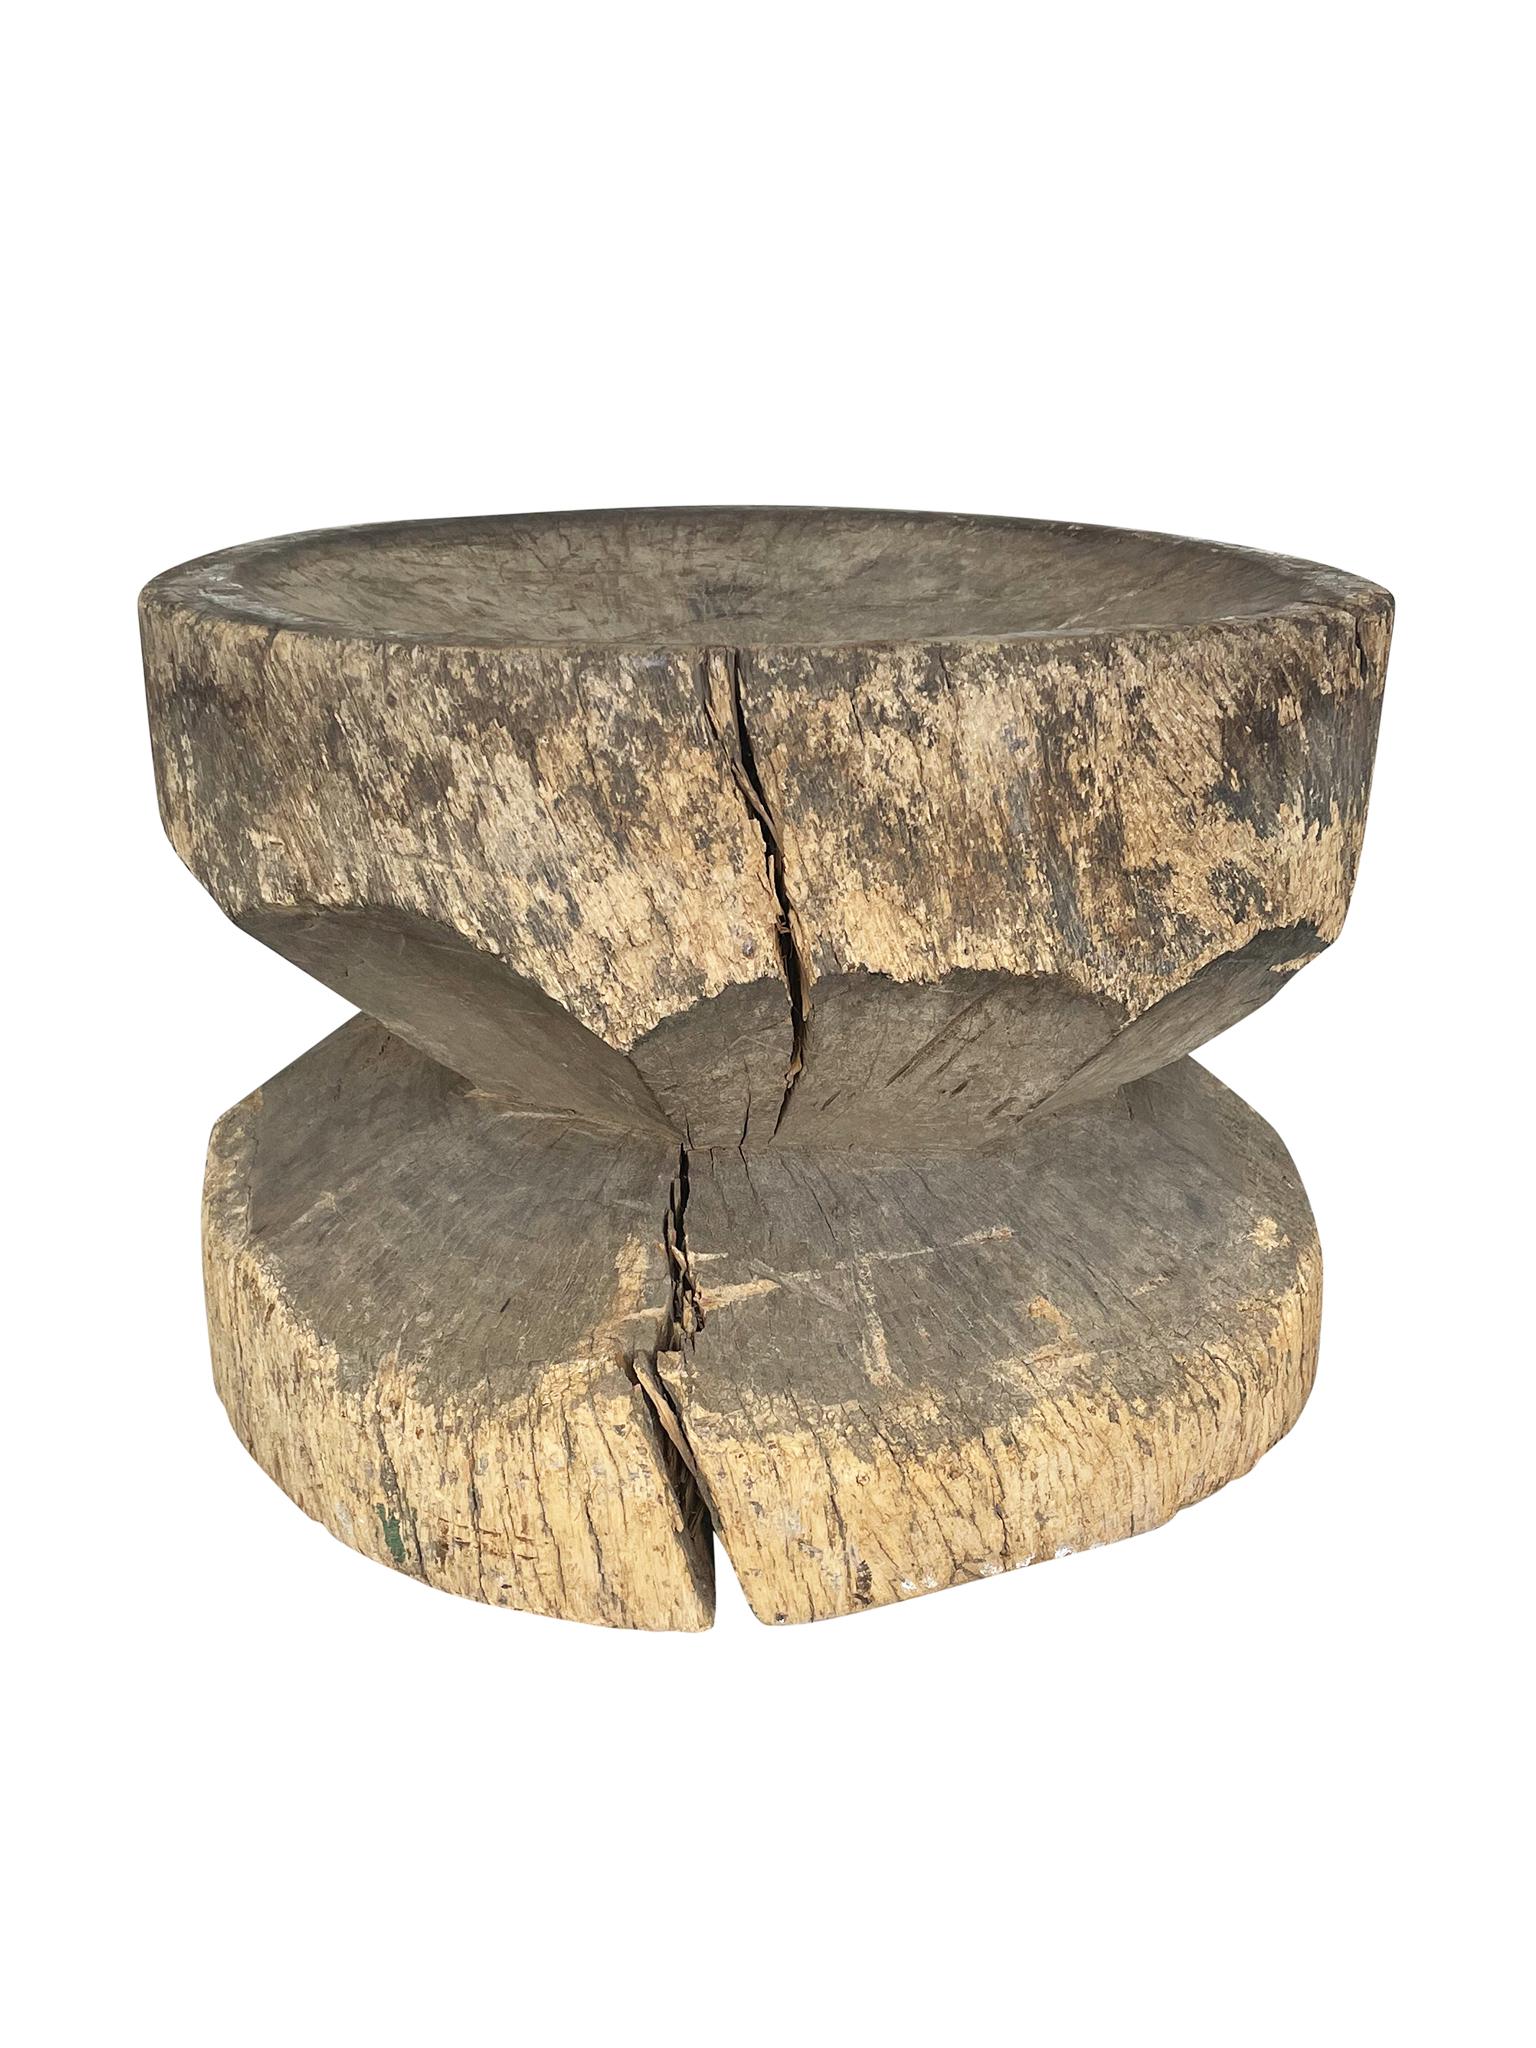 Cette table d'appoint ronde a été sculptée à la main au 20e siècle. Nous aimons sa surface richement texturée et taillée, ainsi que les propriétés organiques du bois.

Dimensions :
Diamètre de 23,5 pouces
Hauteur de 17,5 pouces

Notes de